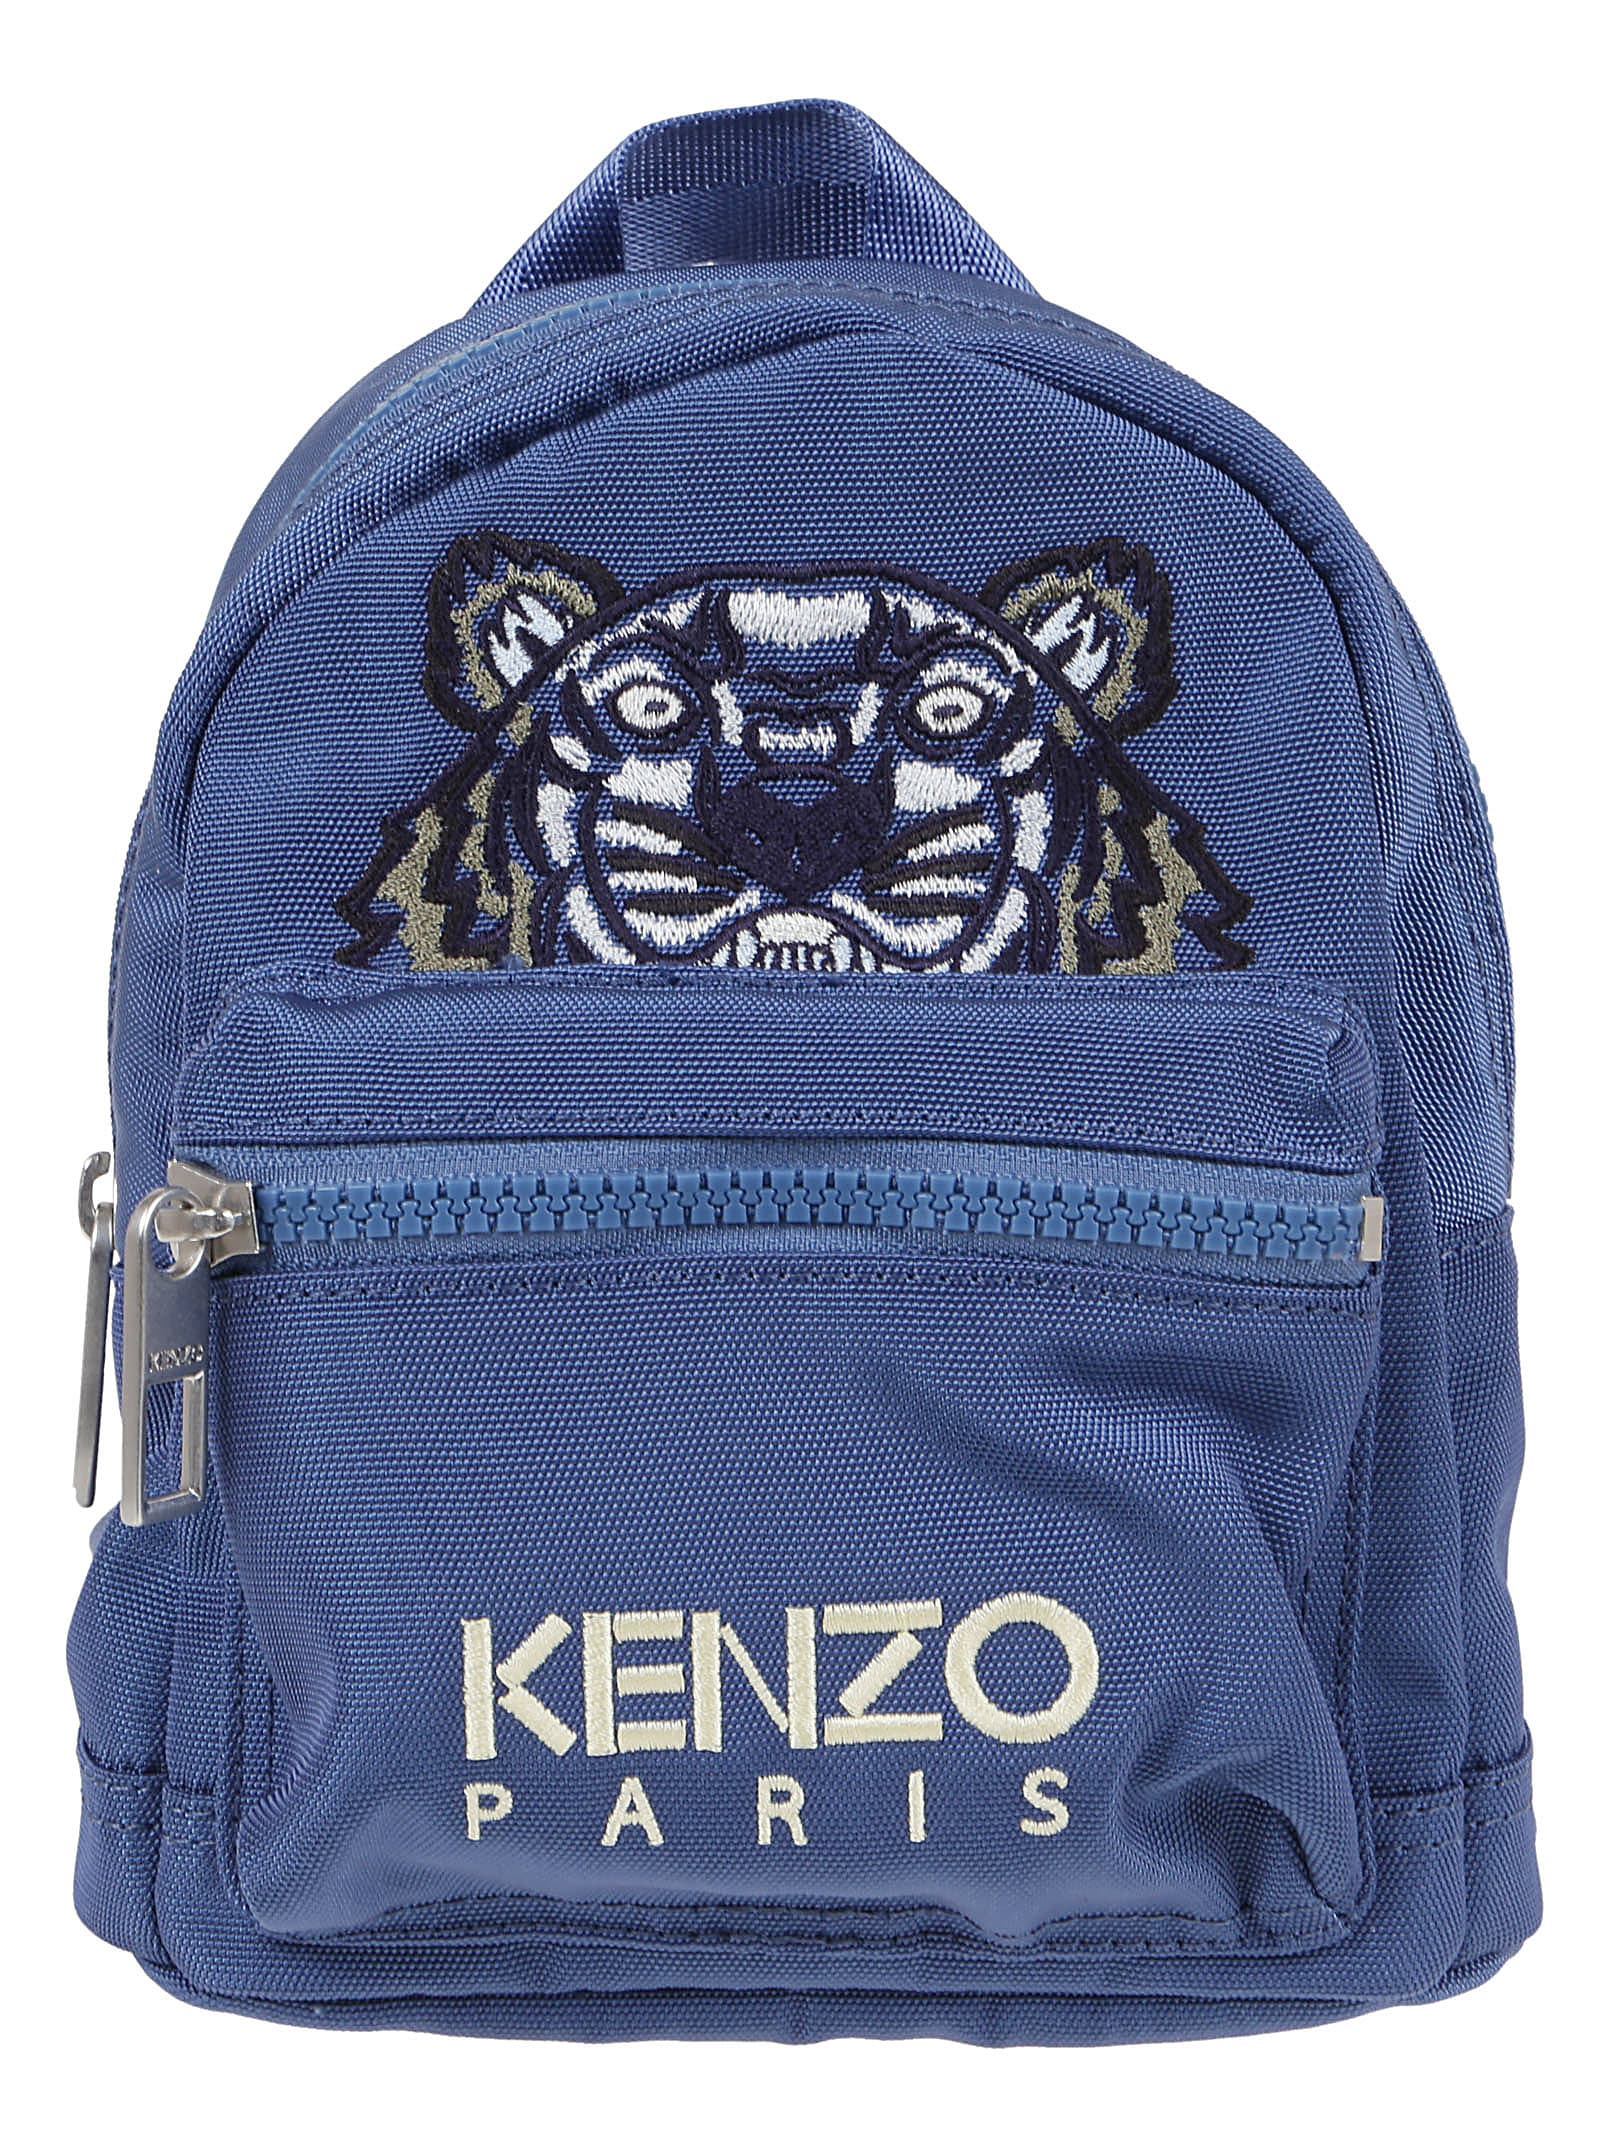 KENZO Backpacks for Men | ModeSens